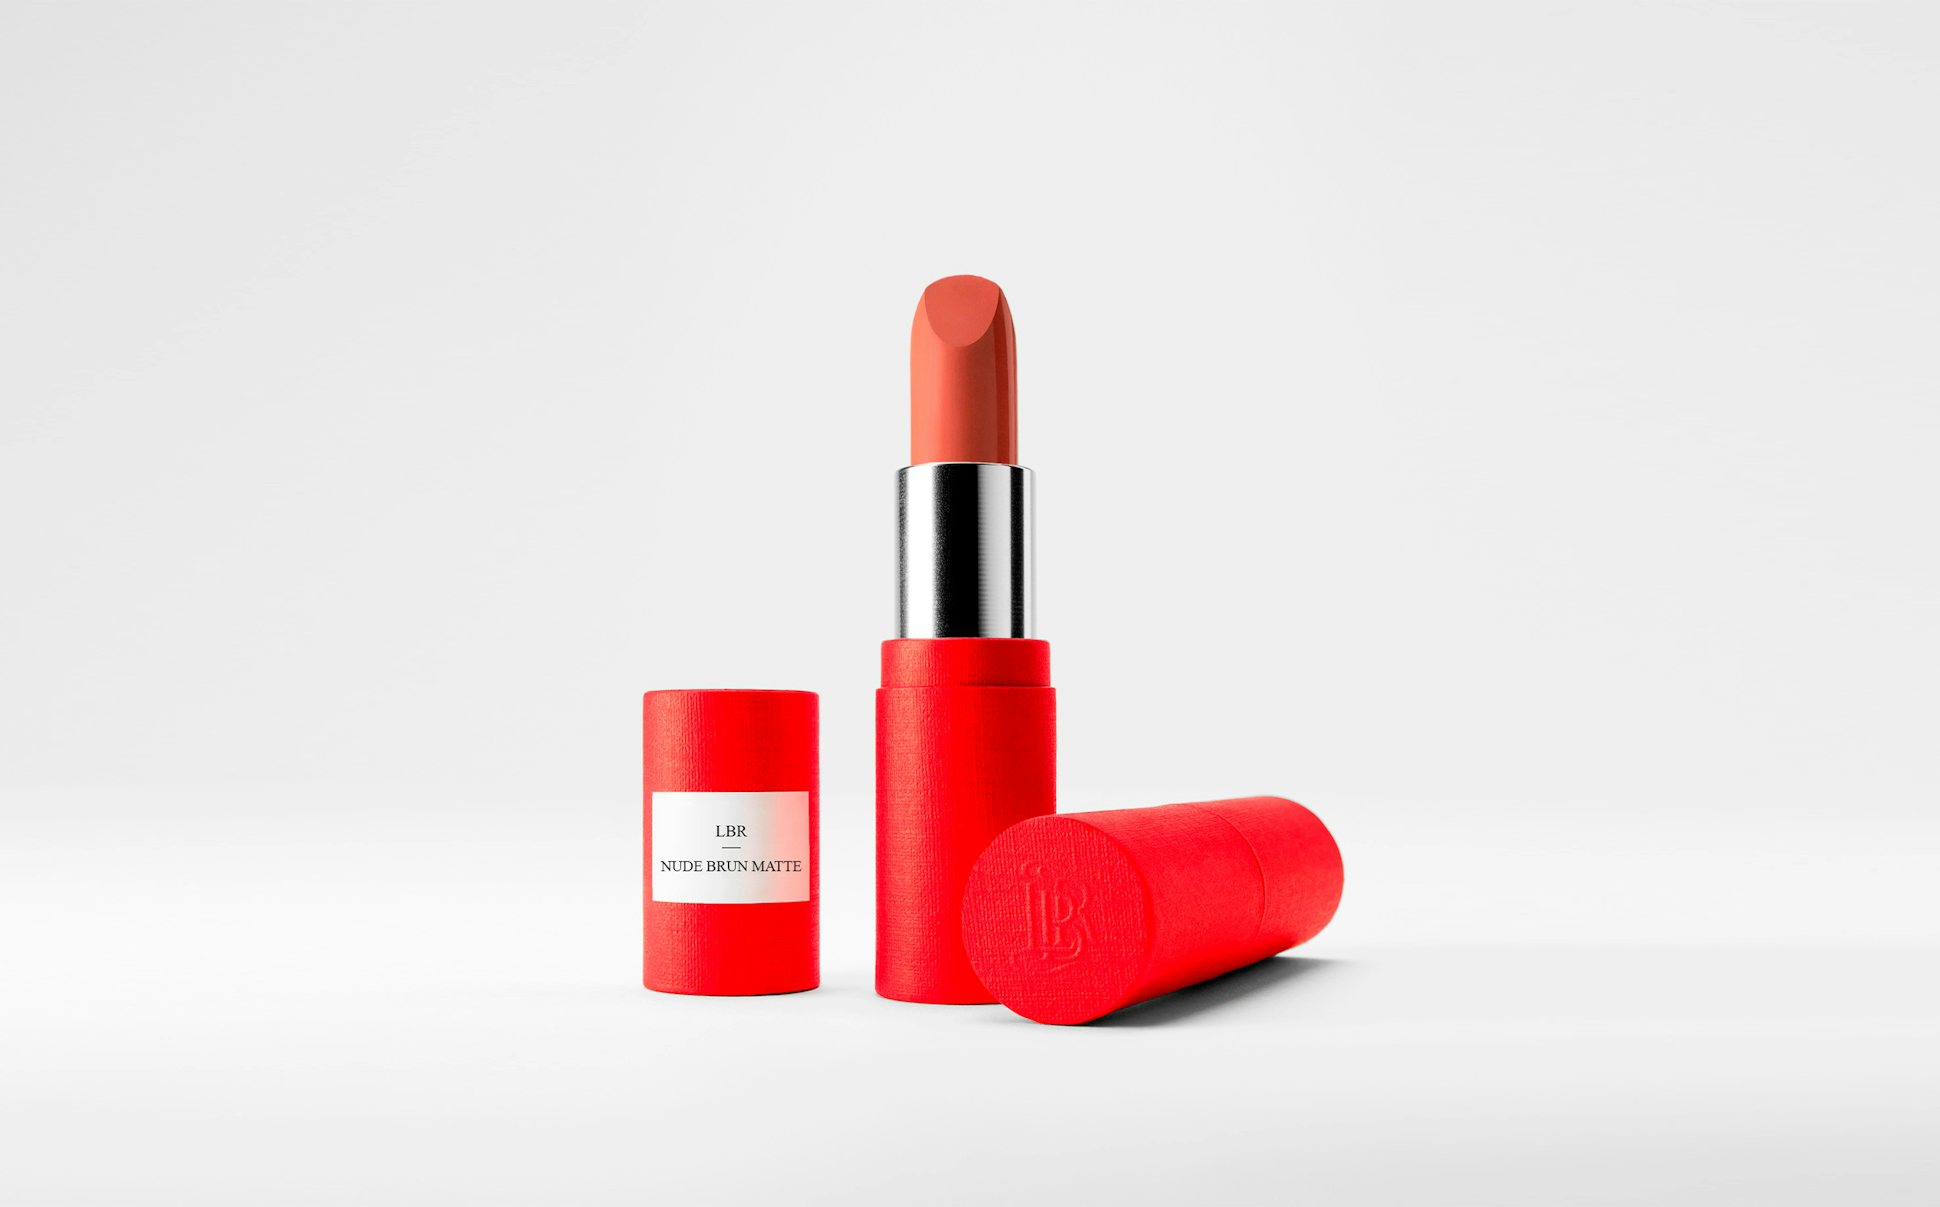 La bouche rouge Nude Brun Matte lipstick in the red paper case